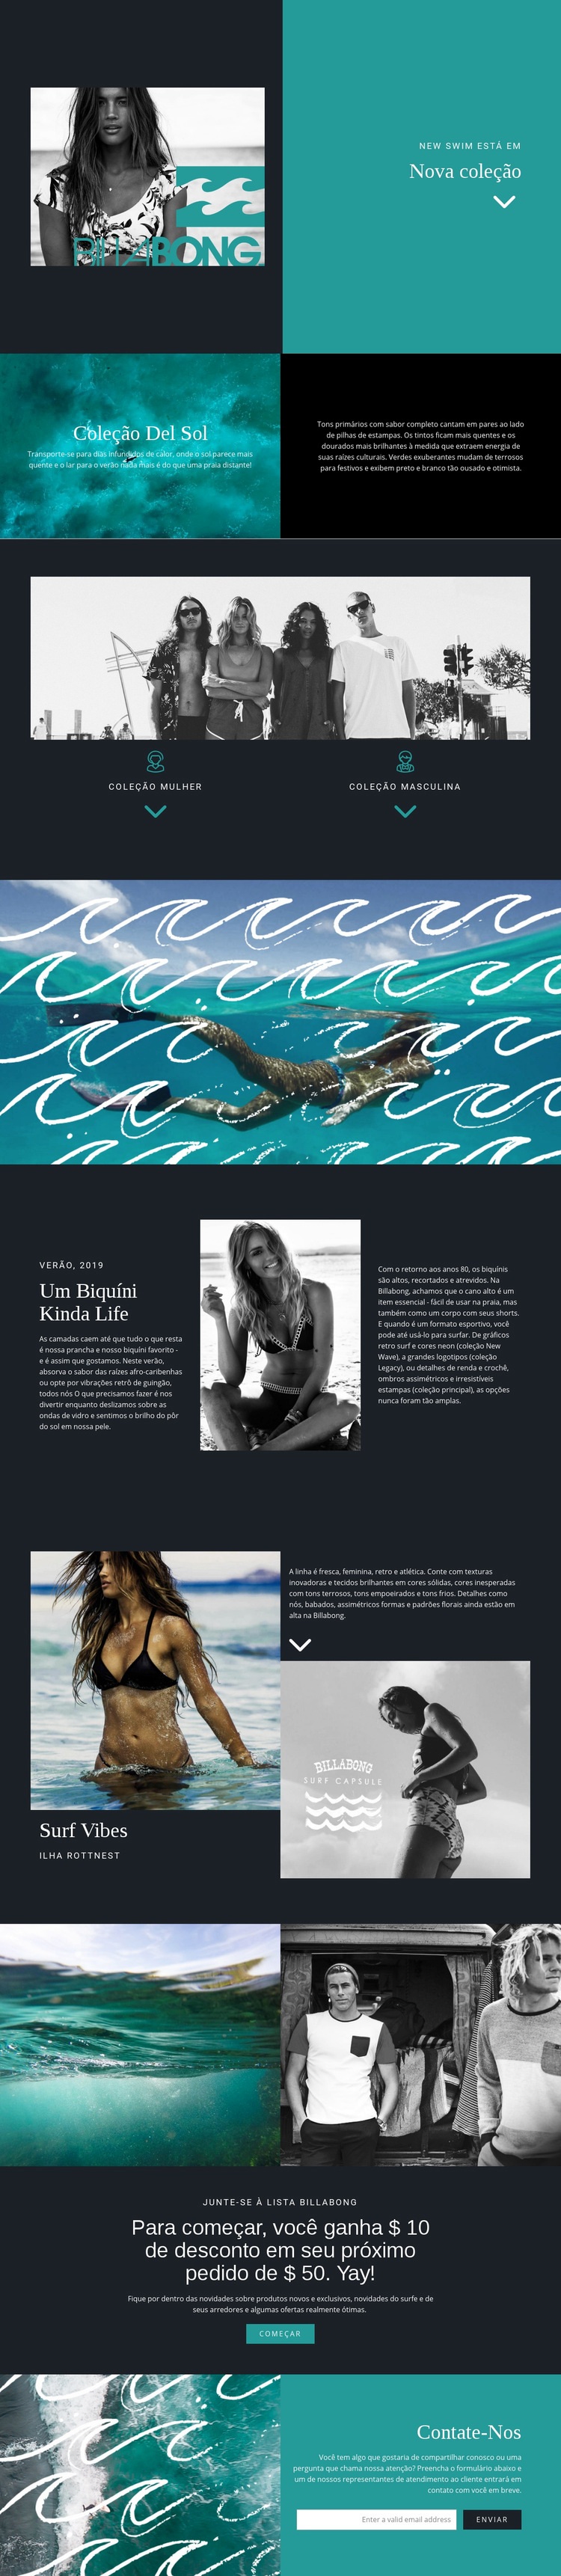 Nova coleção de moda praia Maquete do site